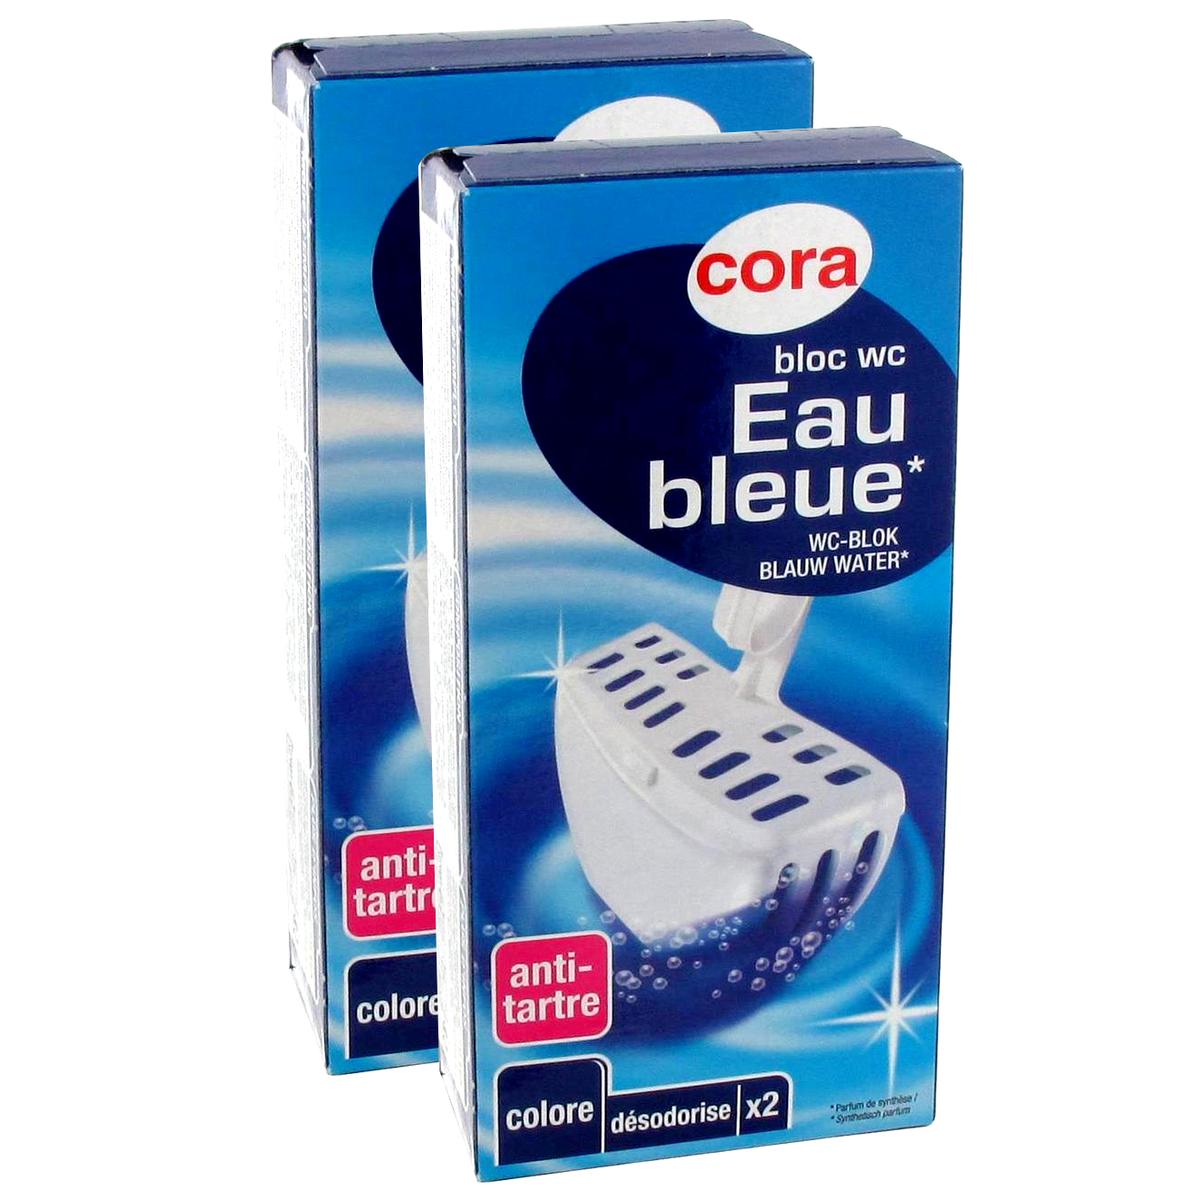 Achat Promotion Cora Blocs WC eau bleue, Lot de 2 paquets de 2 pièces